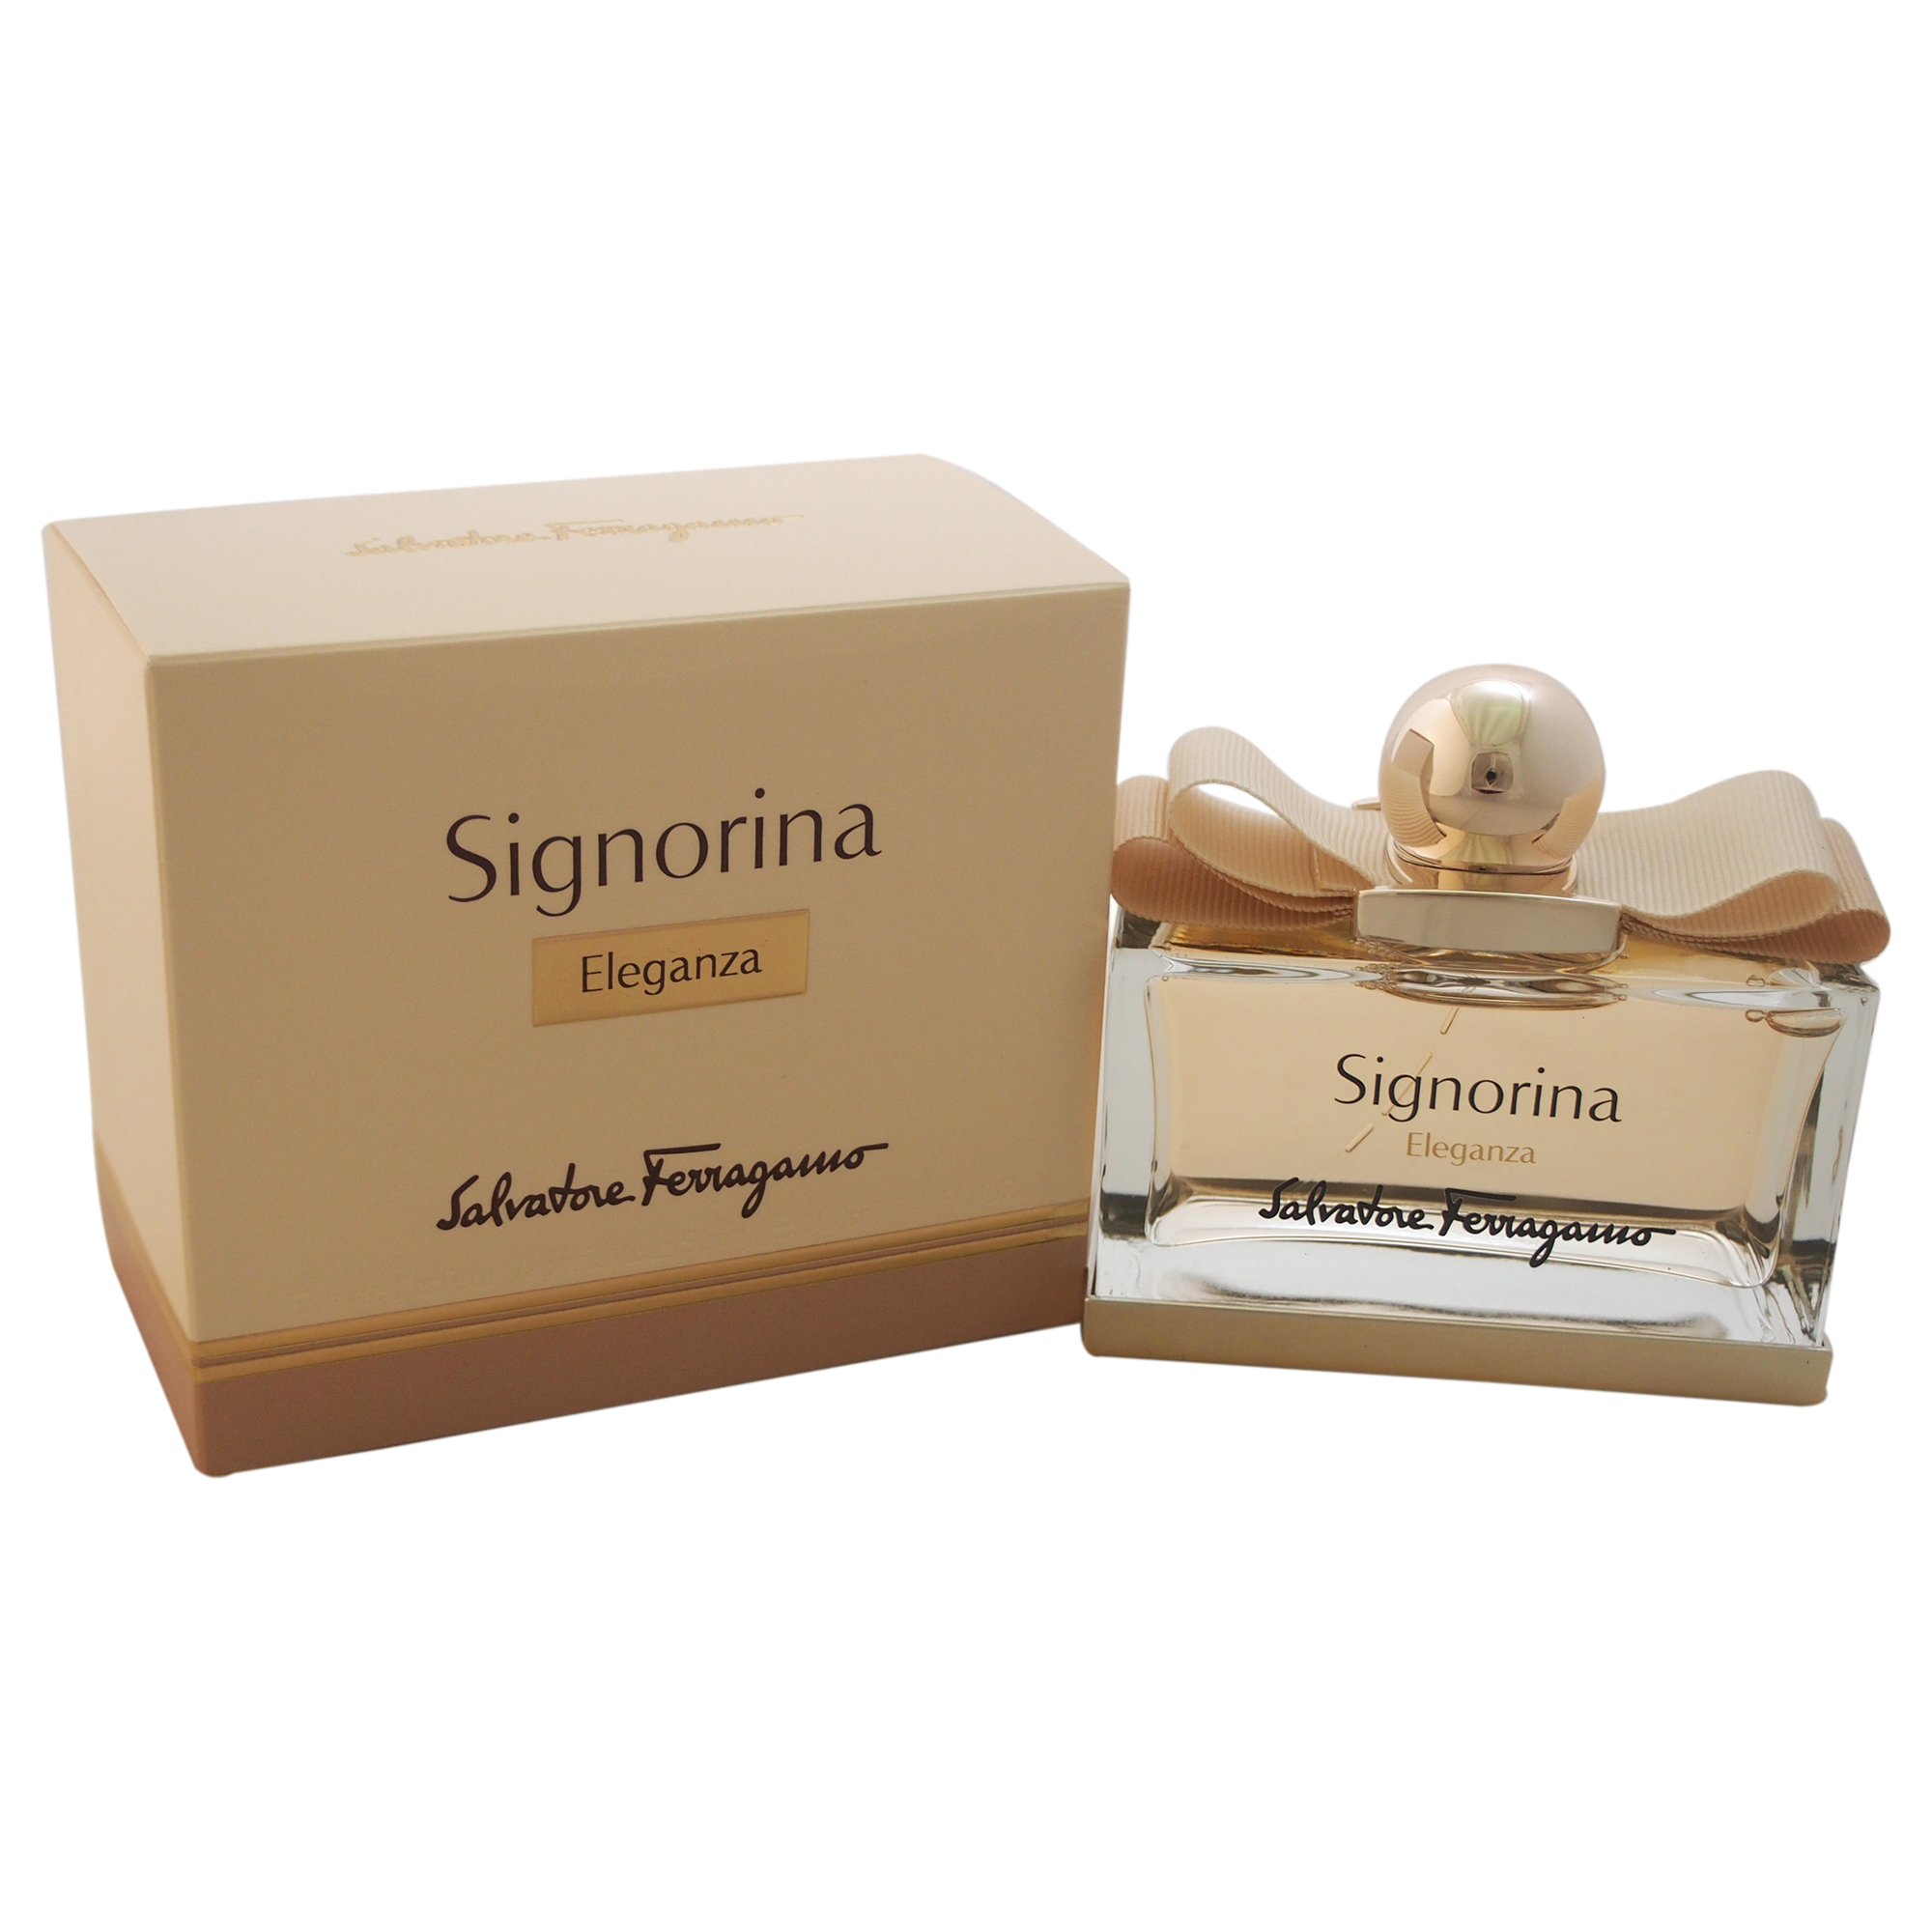 Signorina Eleganza by Salvatore Ferragamo for Women - 3.4 oz EDP Spray